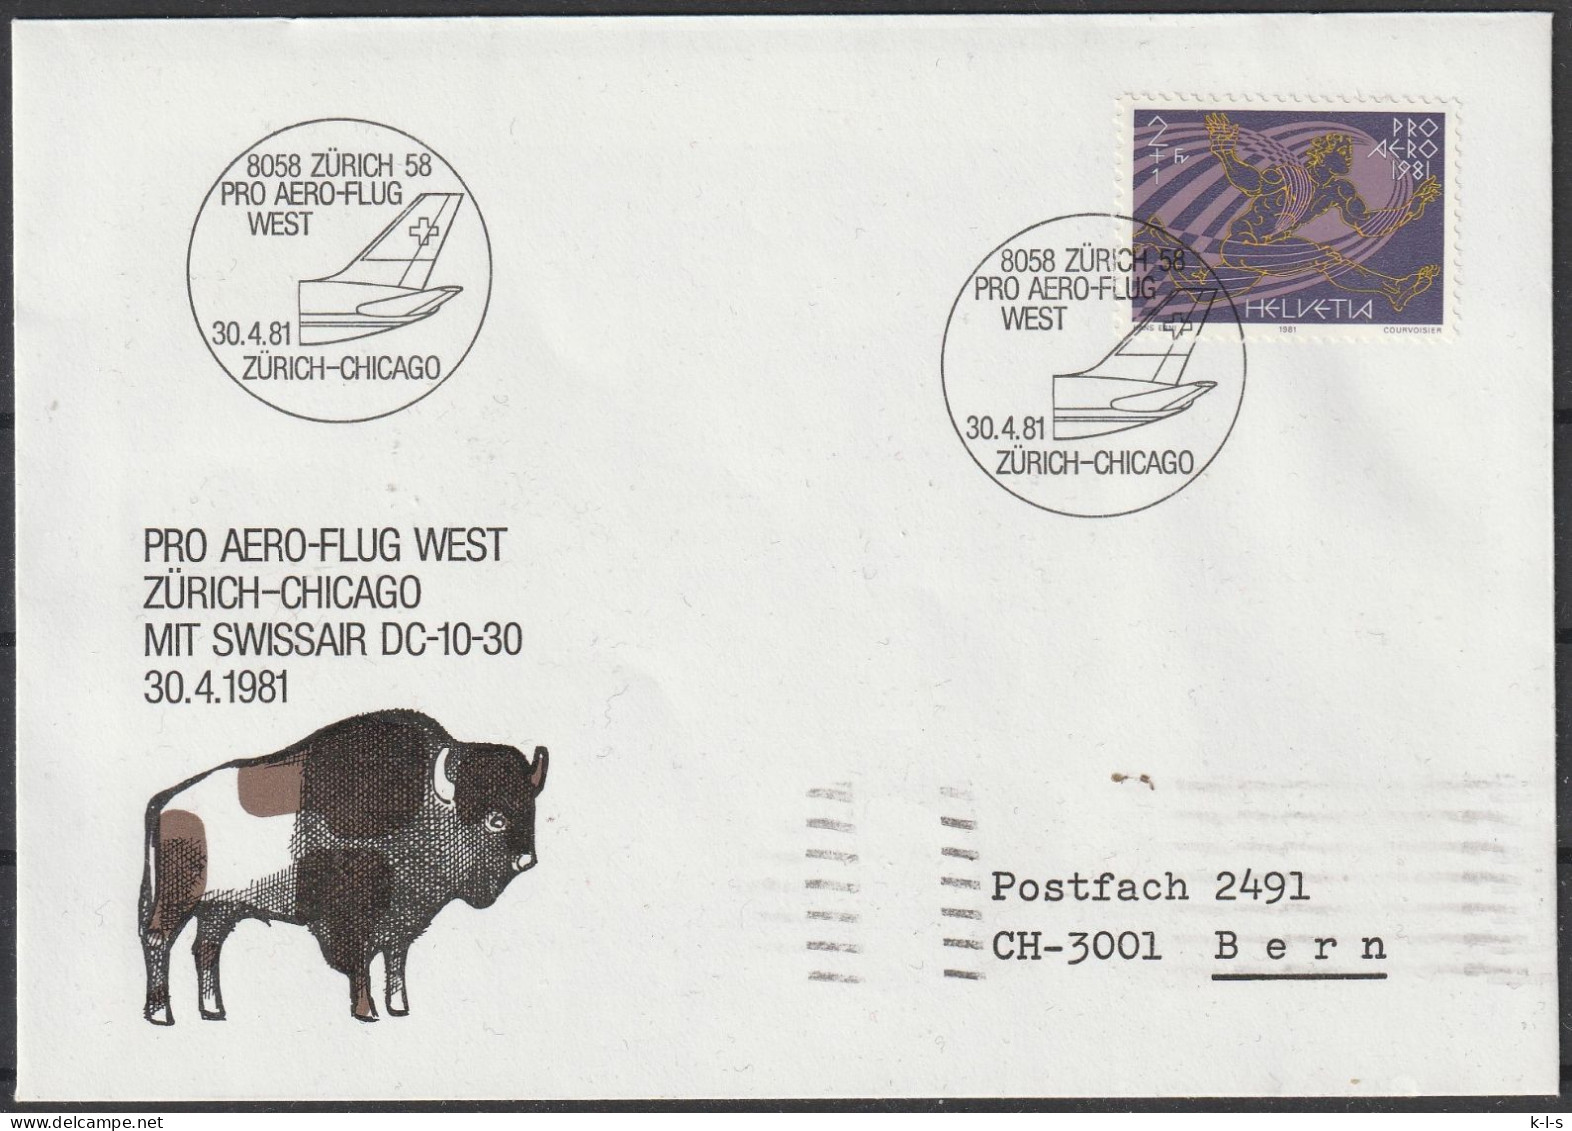 Schweiz: 1981, Fernbrief In EF, Mi. Nr. 1196, SoStpl. Zu Den Erinnerungsflug Am 30.04.1981, ZÜRICH-CHICACO - Premiers Vols